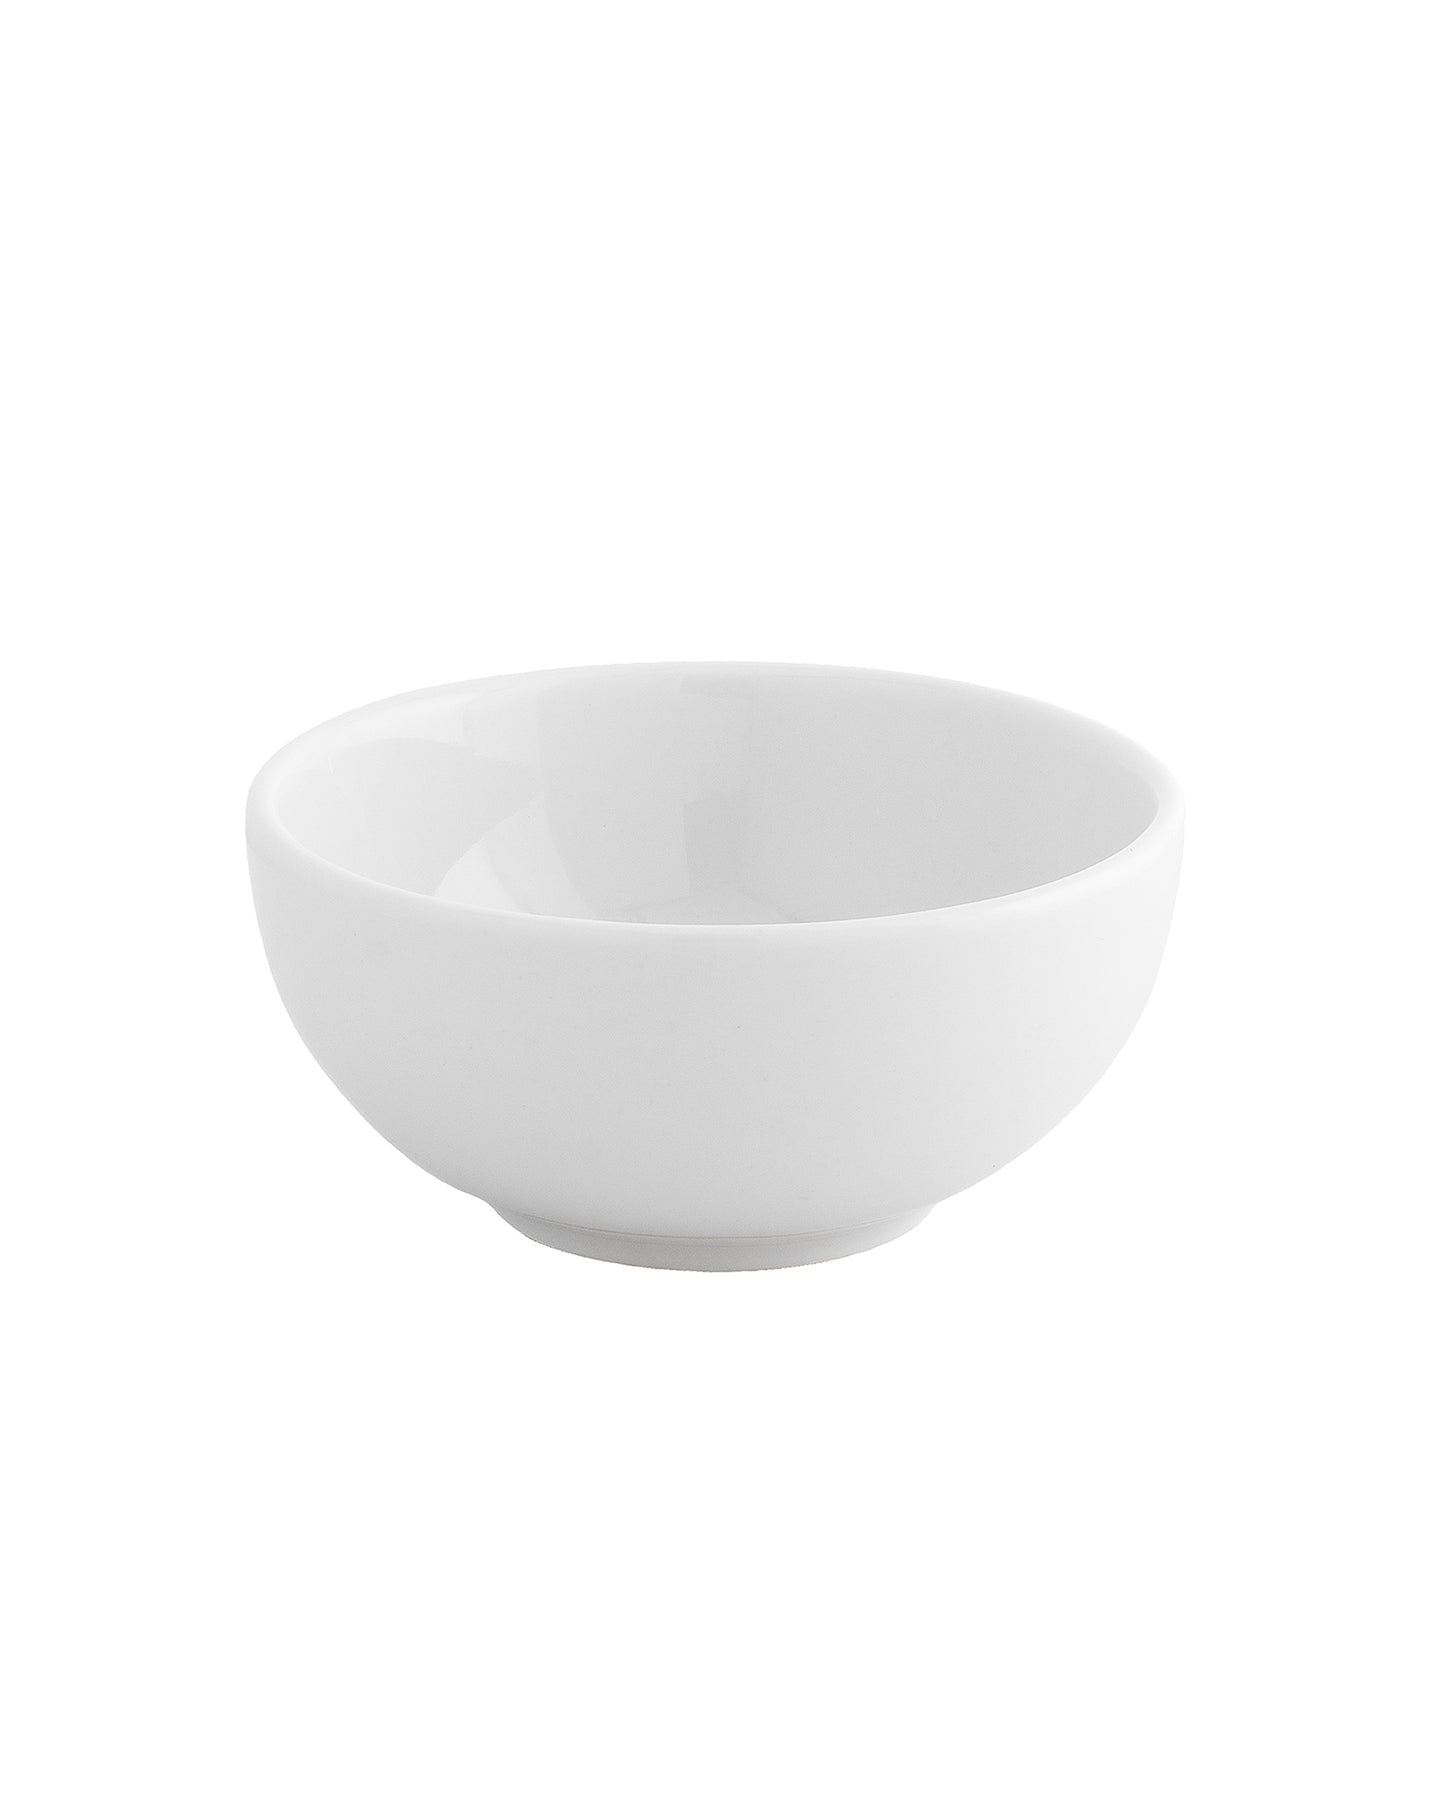 Fine Porcelain Classic Prime Bowl, Dessert Cereal, Soup, Salad, Pasta Bowl,white